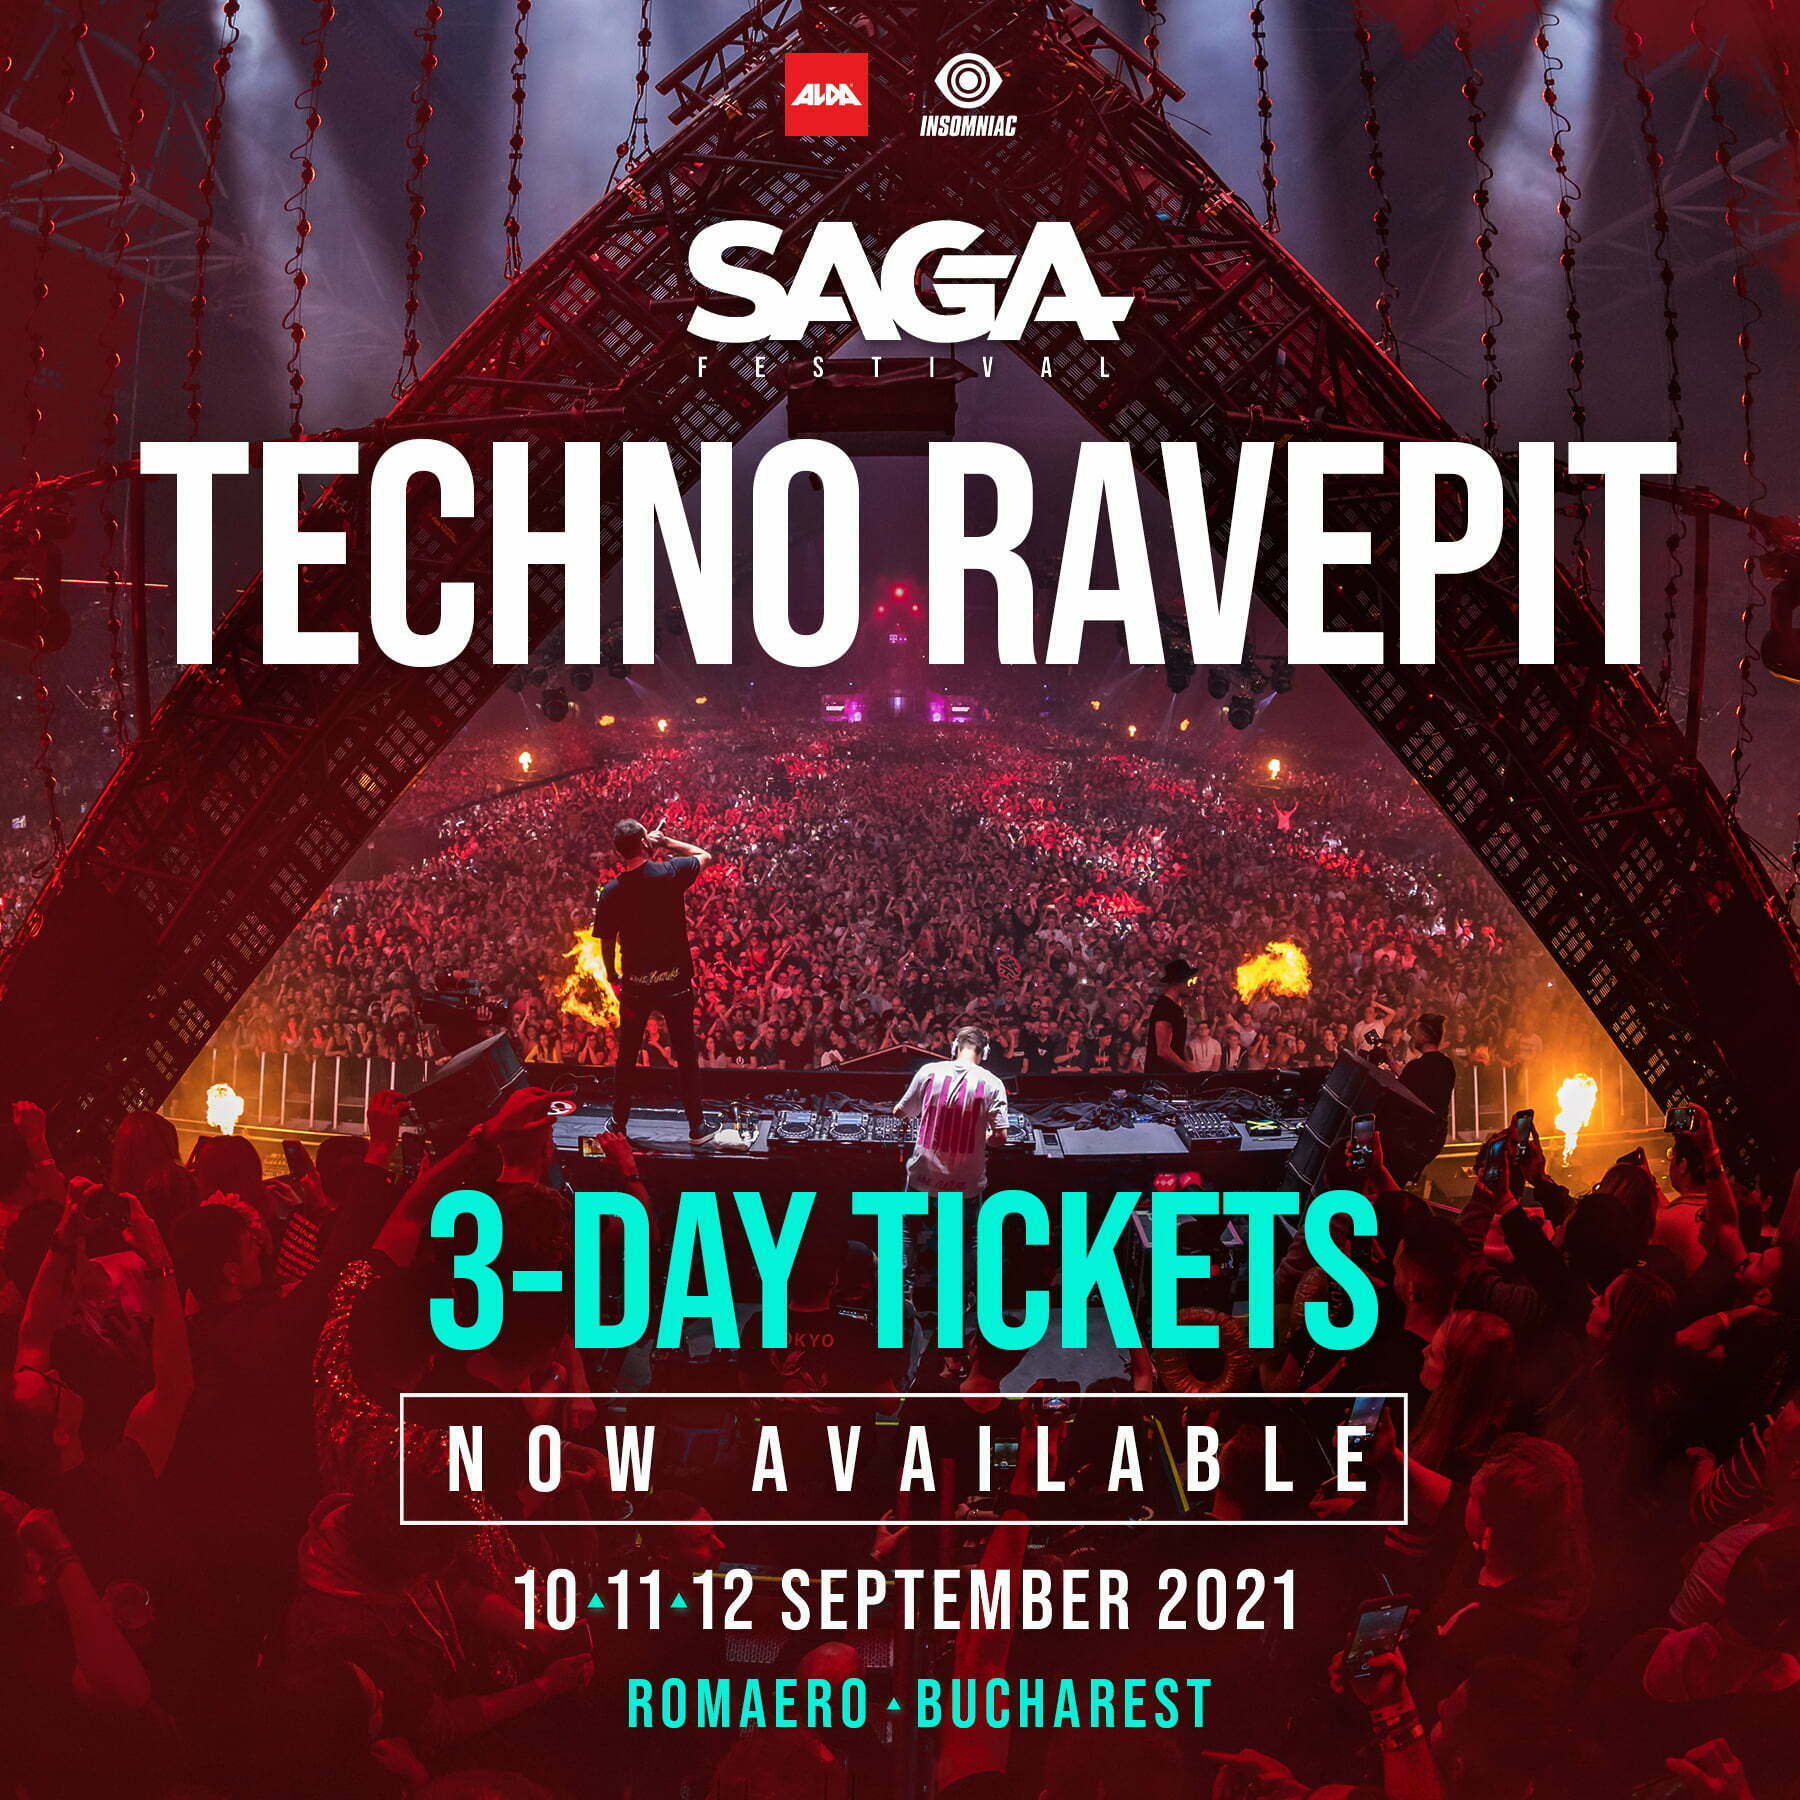 Pentru prima dată în România, SAGA Festival anunță categoria de bilete Rave Pit, care oferă acces în DJ booth